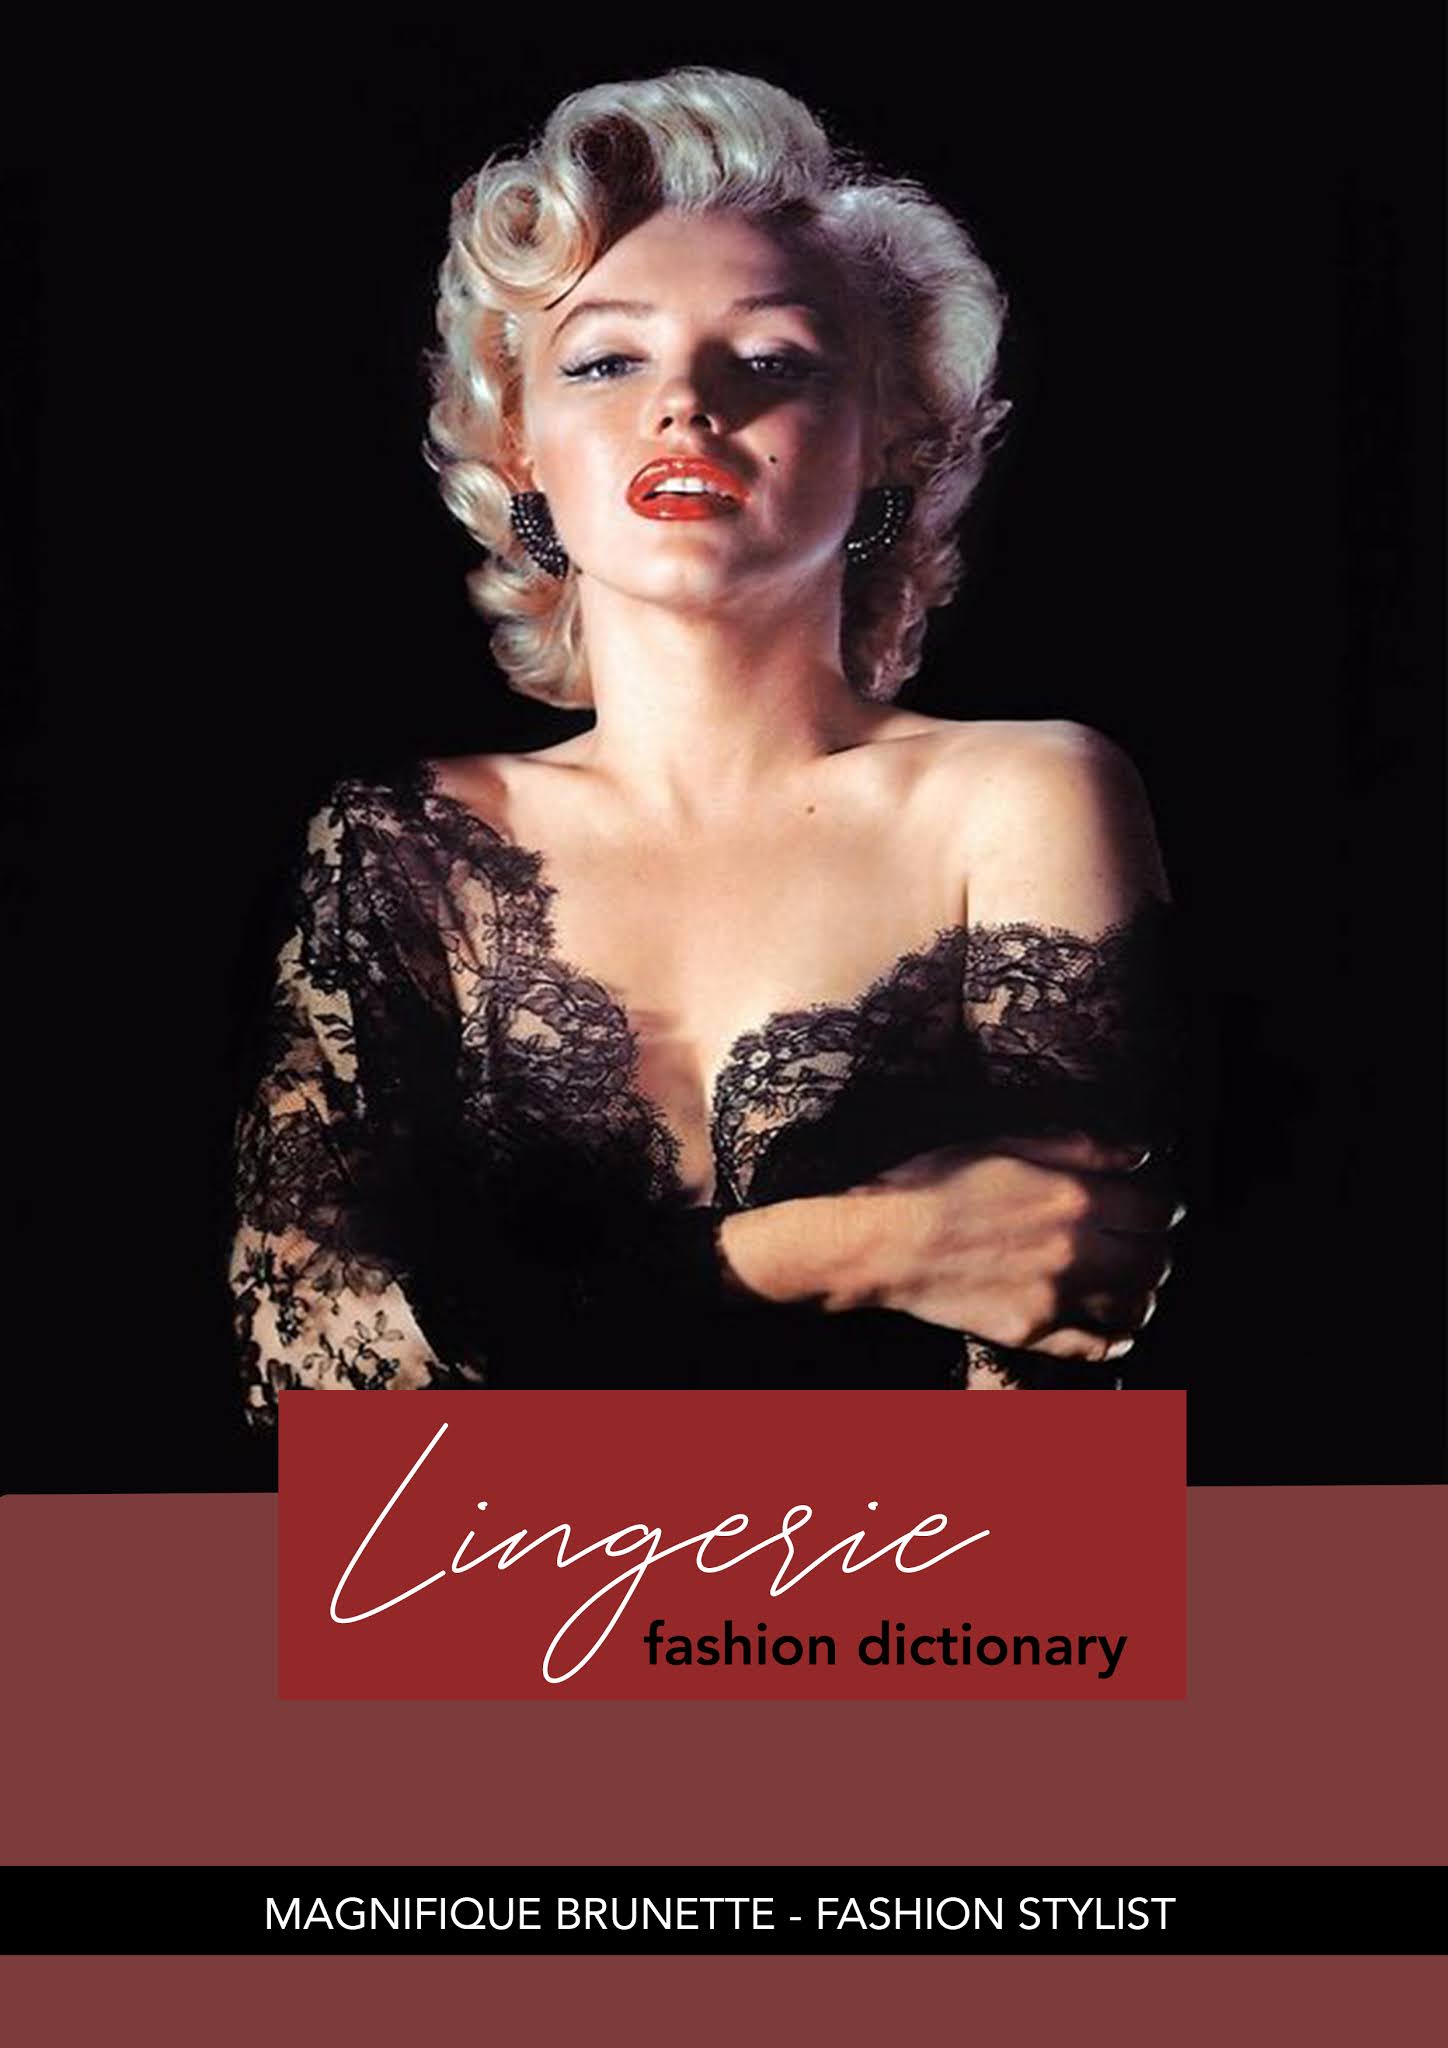 Fashion dictionary - LINGERIE - Magnifique Brunette